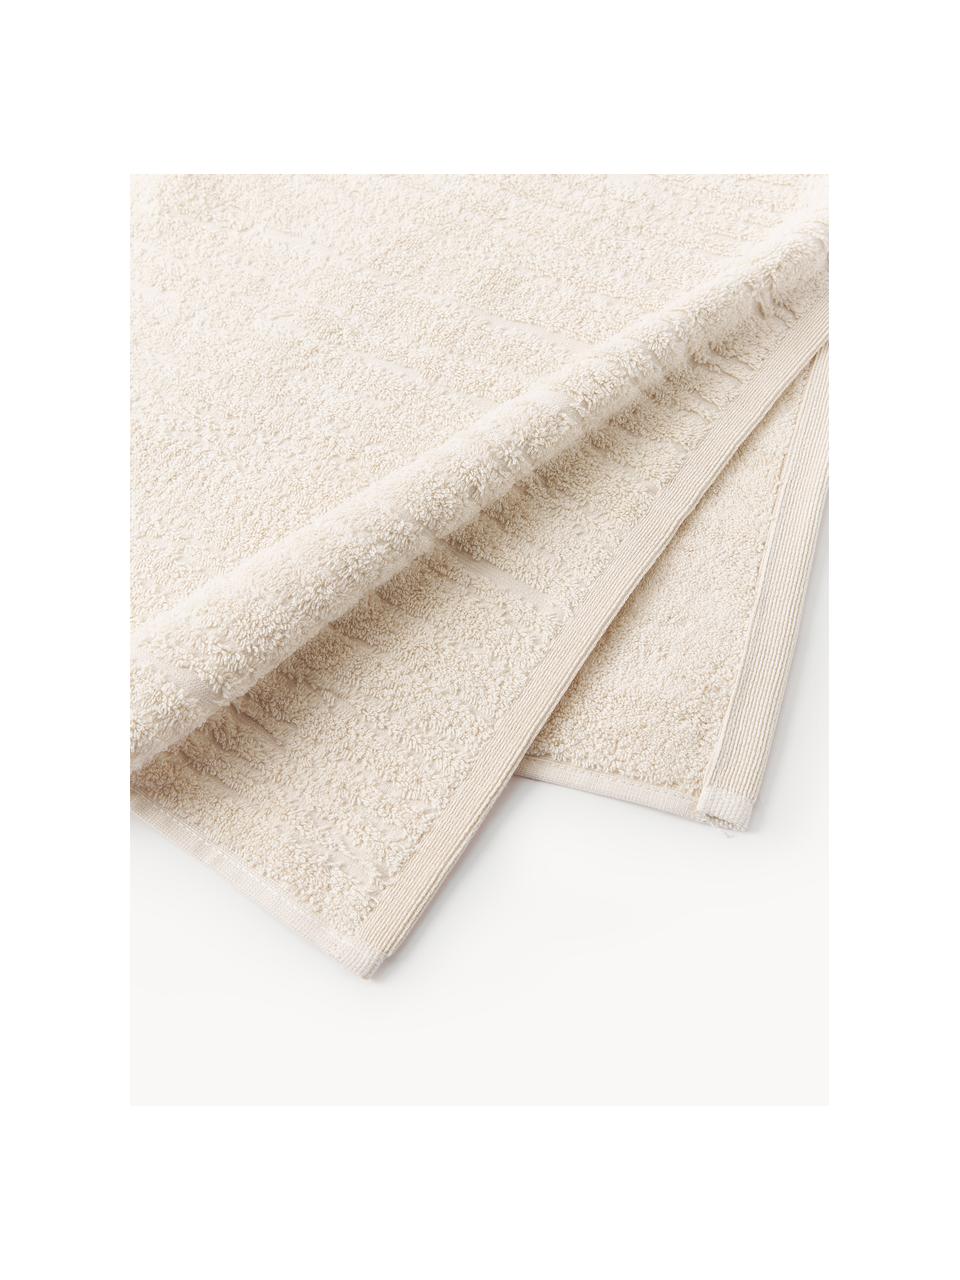 Ręcznik z bawełny Audrina, różne rozmiary, Jasny beżowy, Ręcznik, S 50 x D 100 cm, 2 szt.